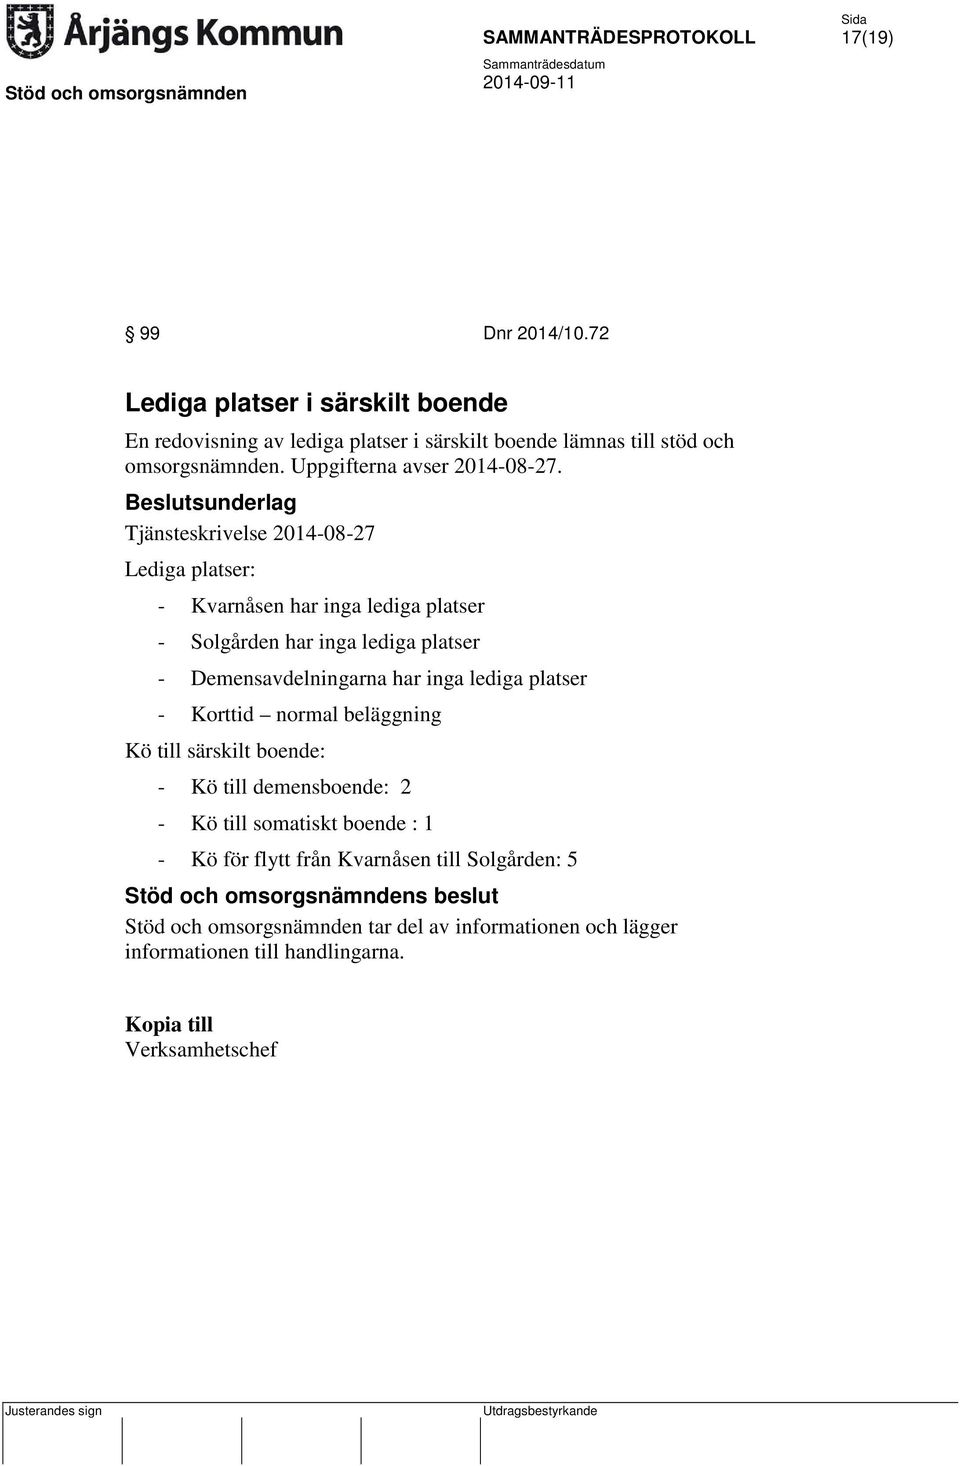 Tjänsteskrivelse 2014-08-27 Lediga platser: - Kvarnåsen har inga lediga platser - Solgården har inga lediga platser - Demensavdelningarna har inga